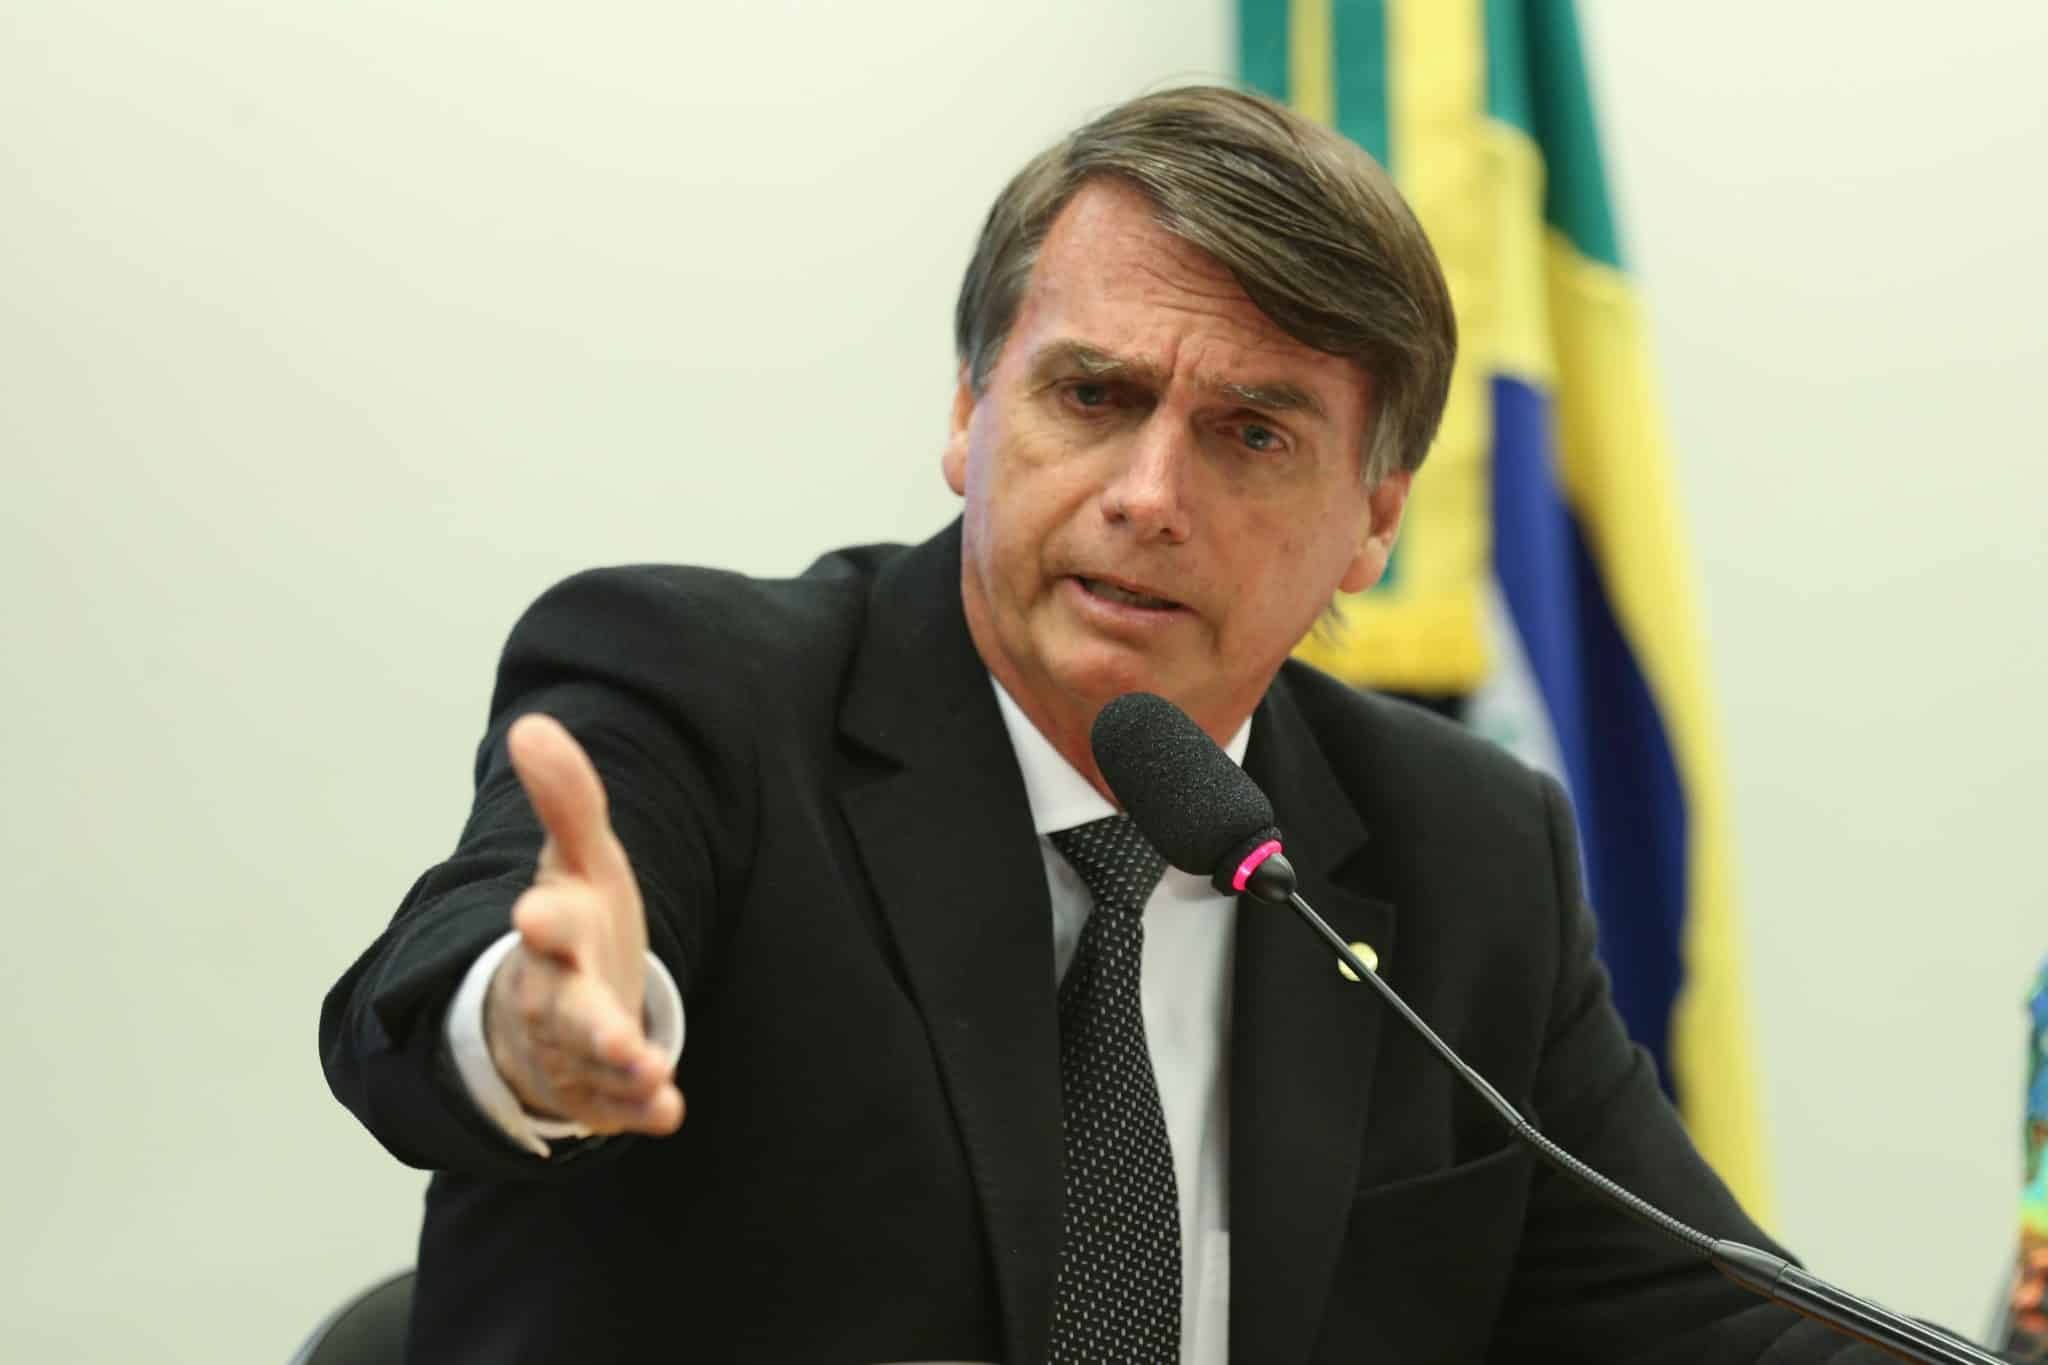 https://commons.wikimedia.org/wiki/File:Jair_Bolsonaro_-_EBC_02.jpg